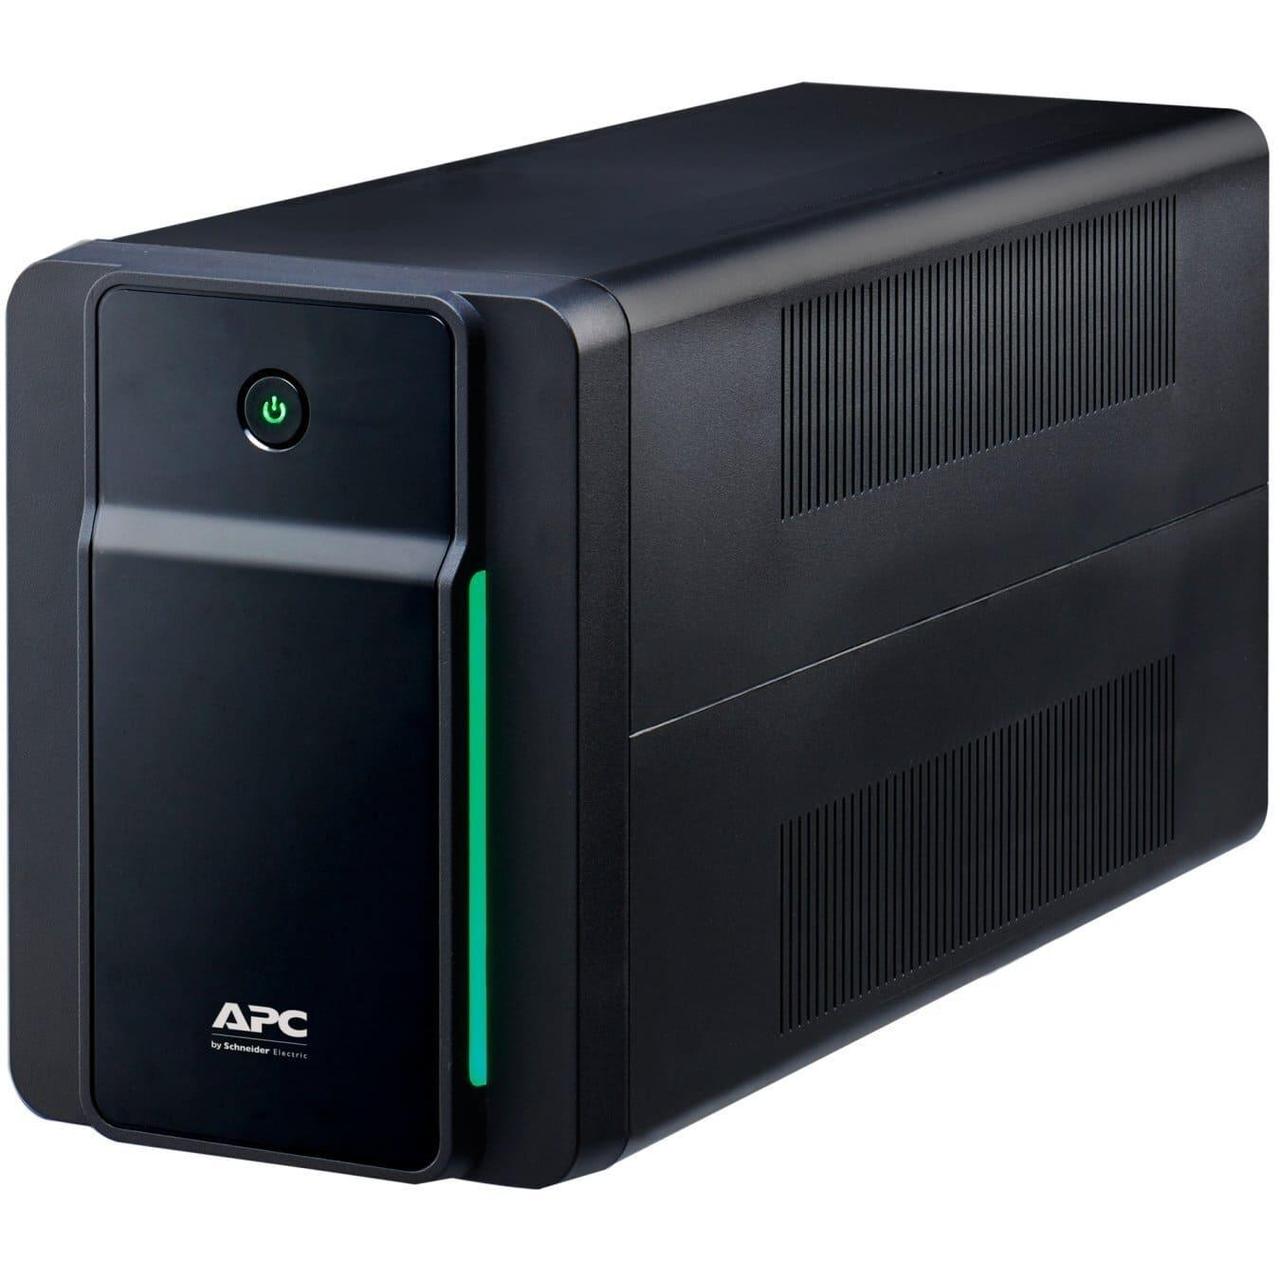 Джерело безперебійного живлення APC Back-UPS 1600VA, Lin.int., AVR, 4 х Schuko, USB, RJ-11, RJ-45, пластик